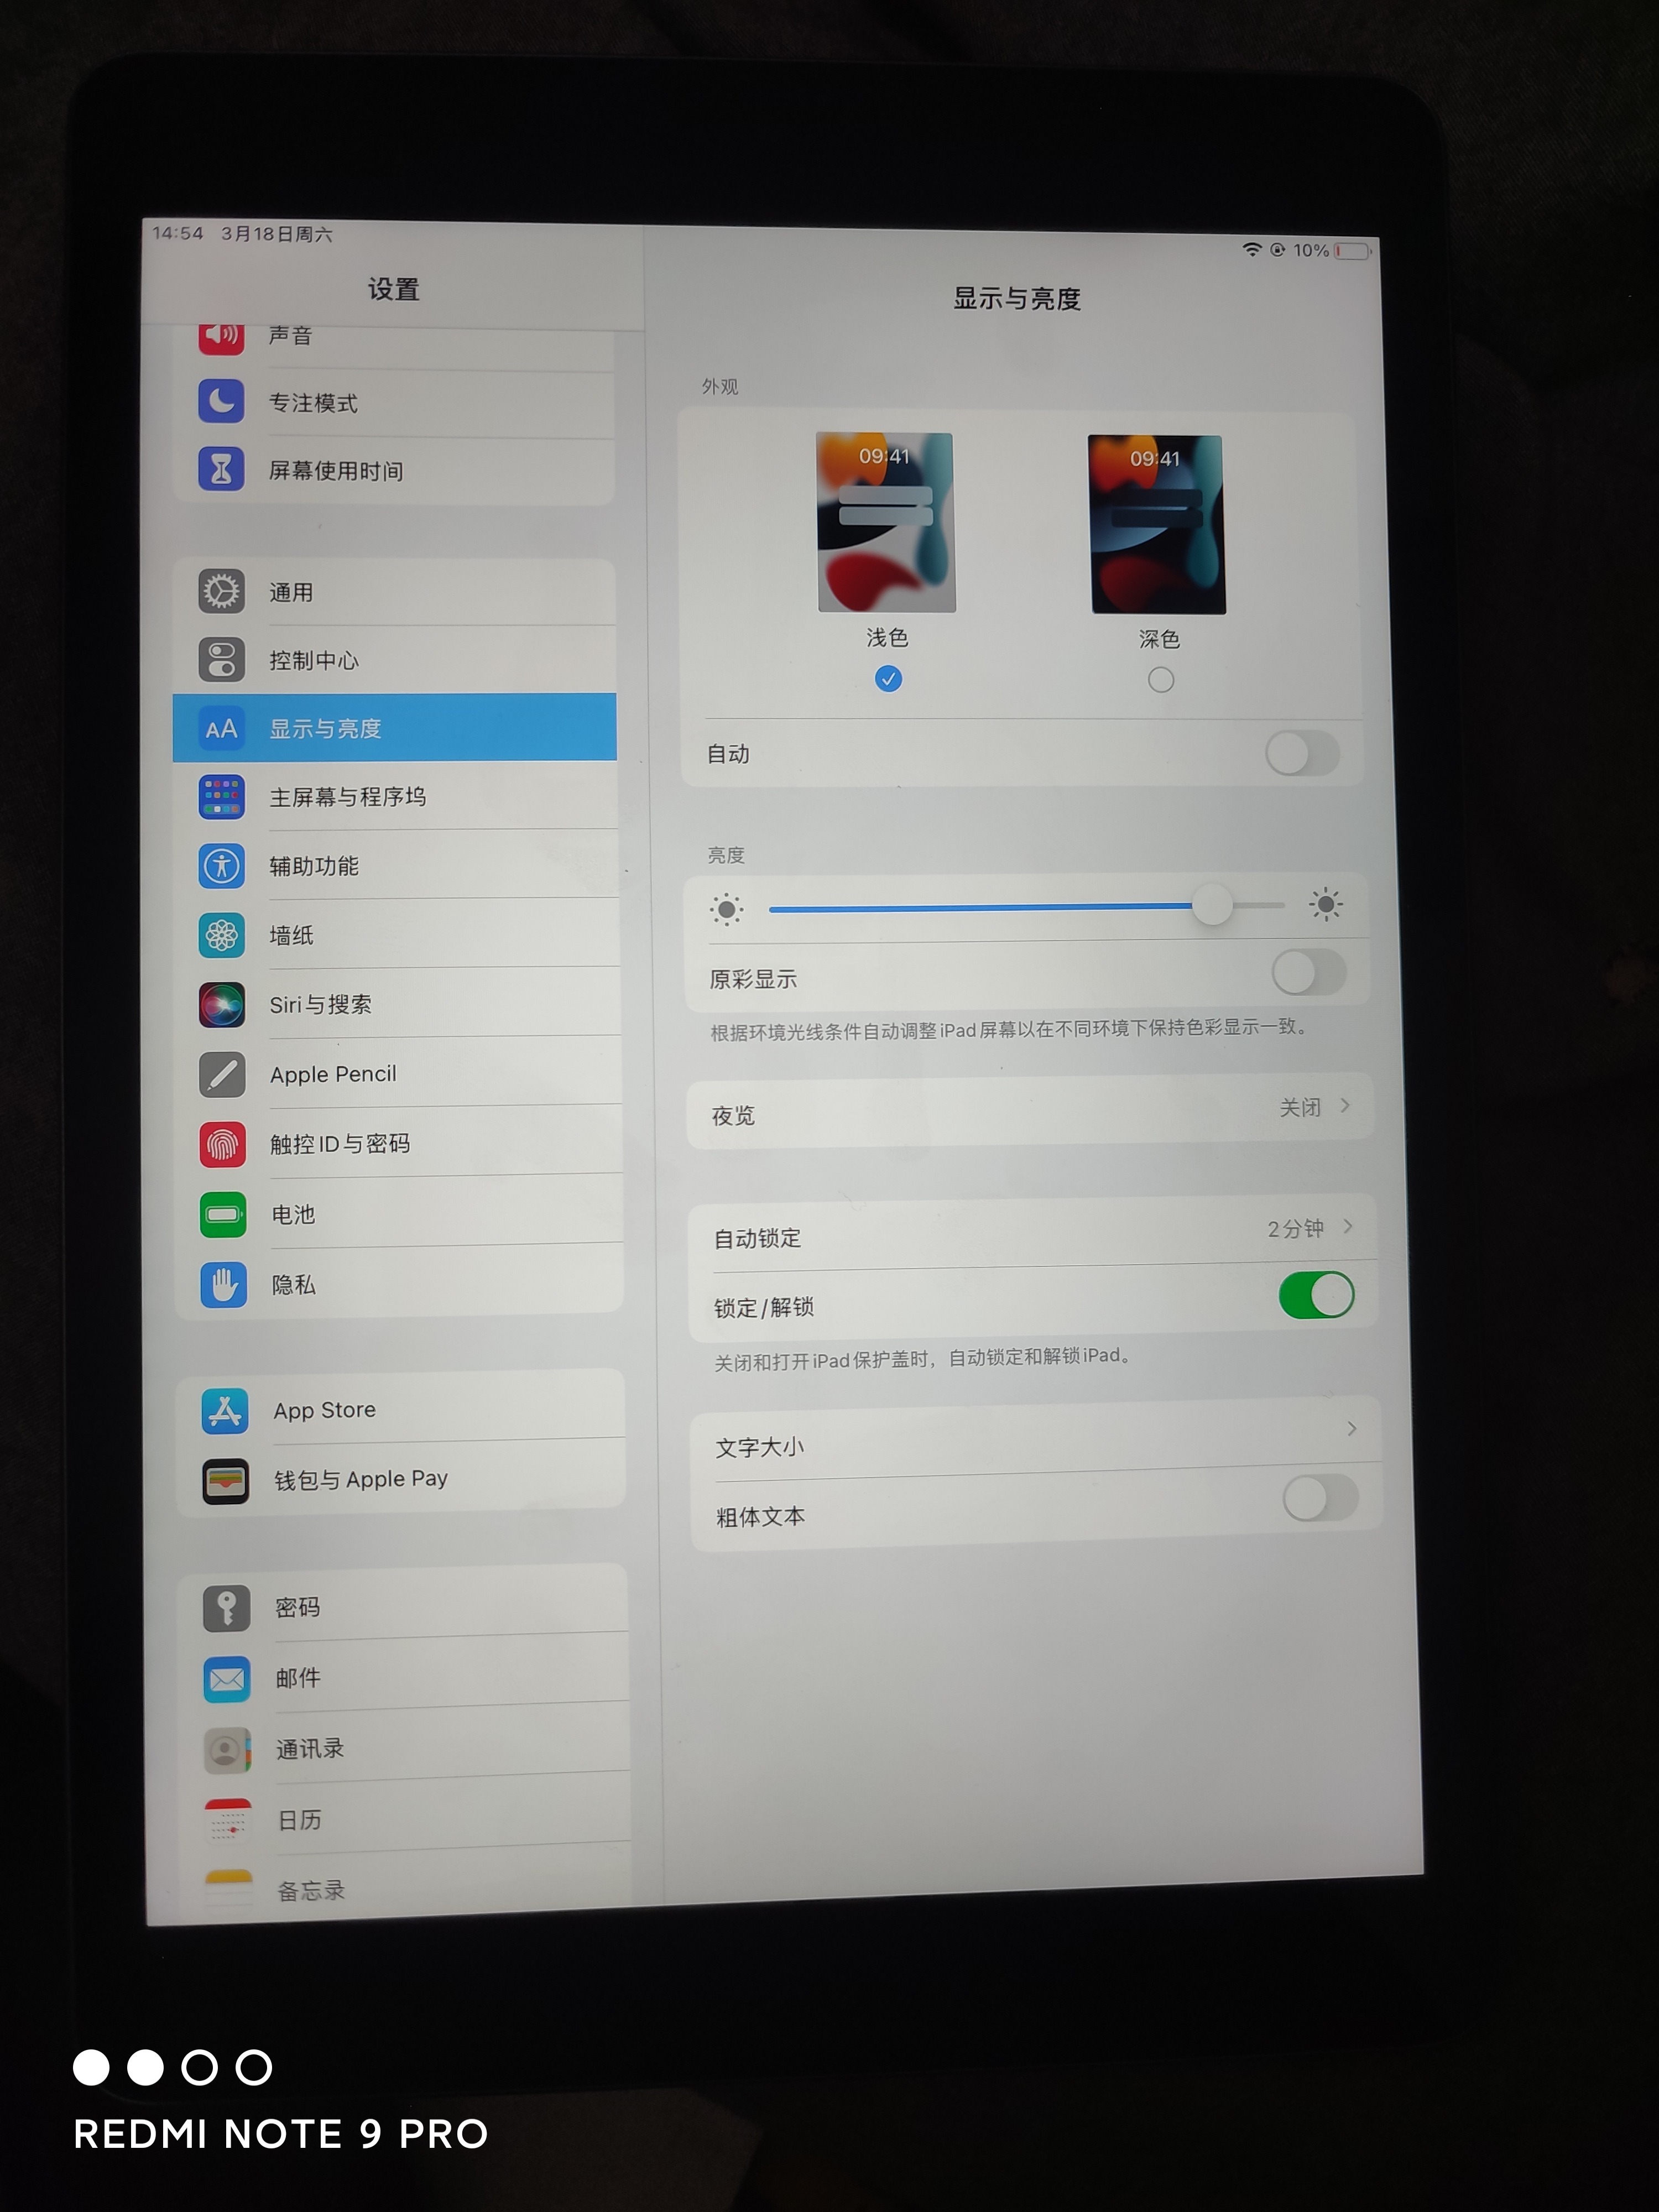 苹果【iPad9 10.2英寸 21款】WIFI版 深空灰 64G 国行 95新 